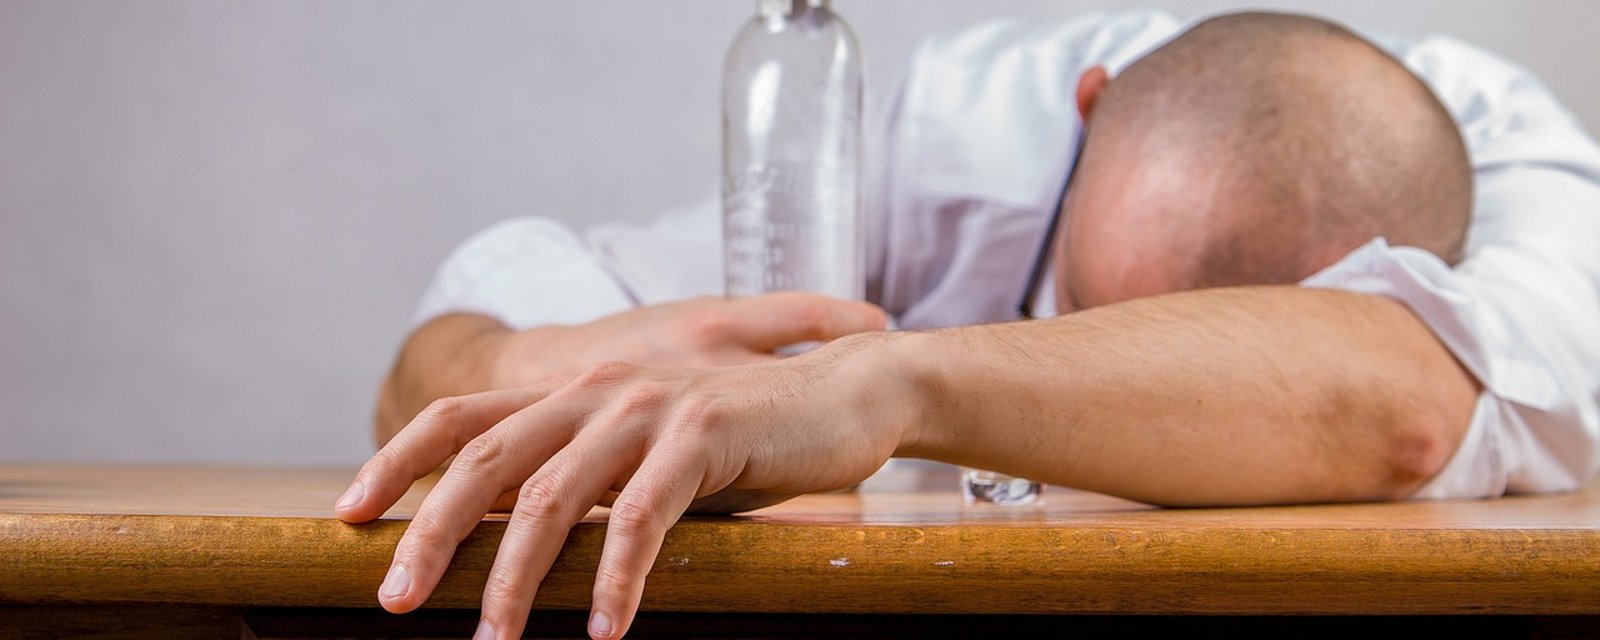 Voici 8 choses qui se produisent lorsque vous cessez de boire de l'alcool durant 1 mois